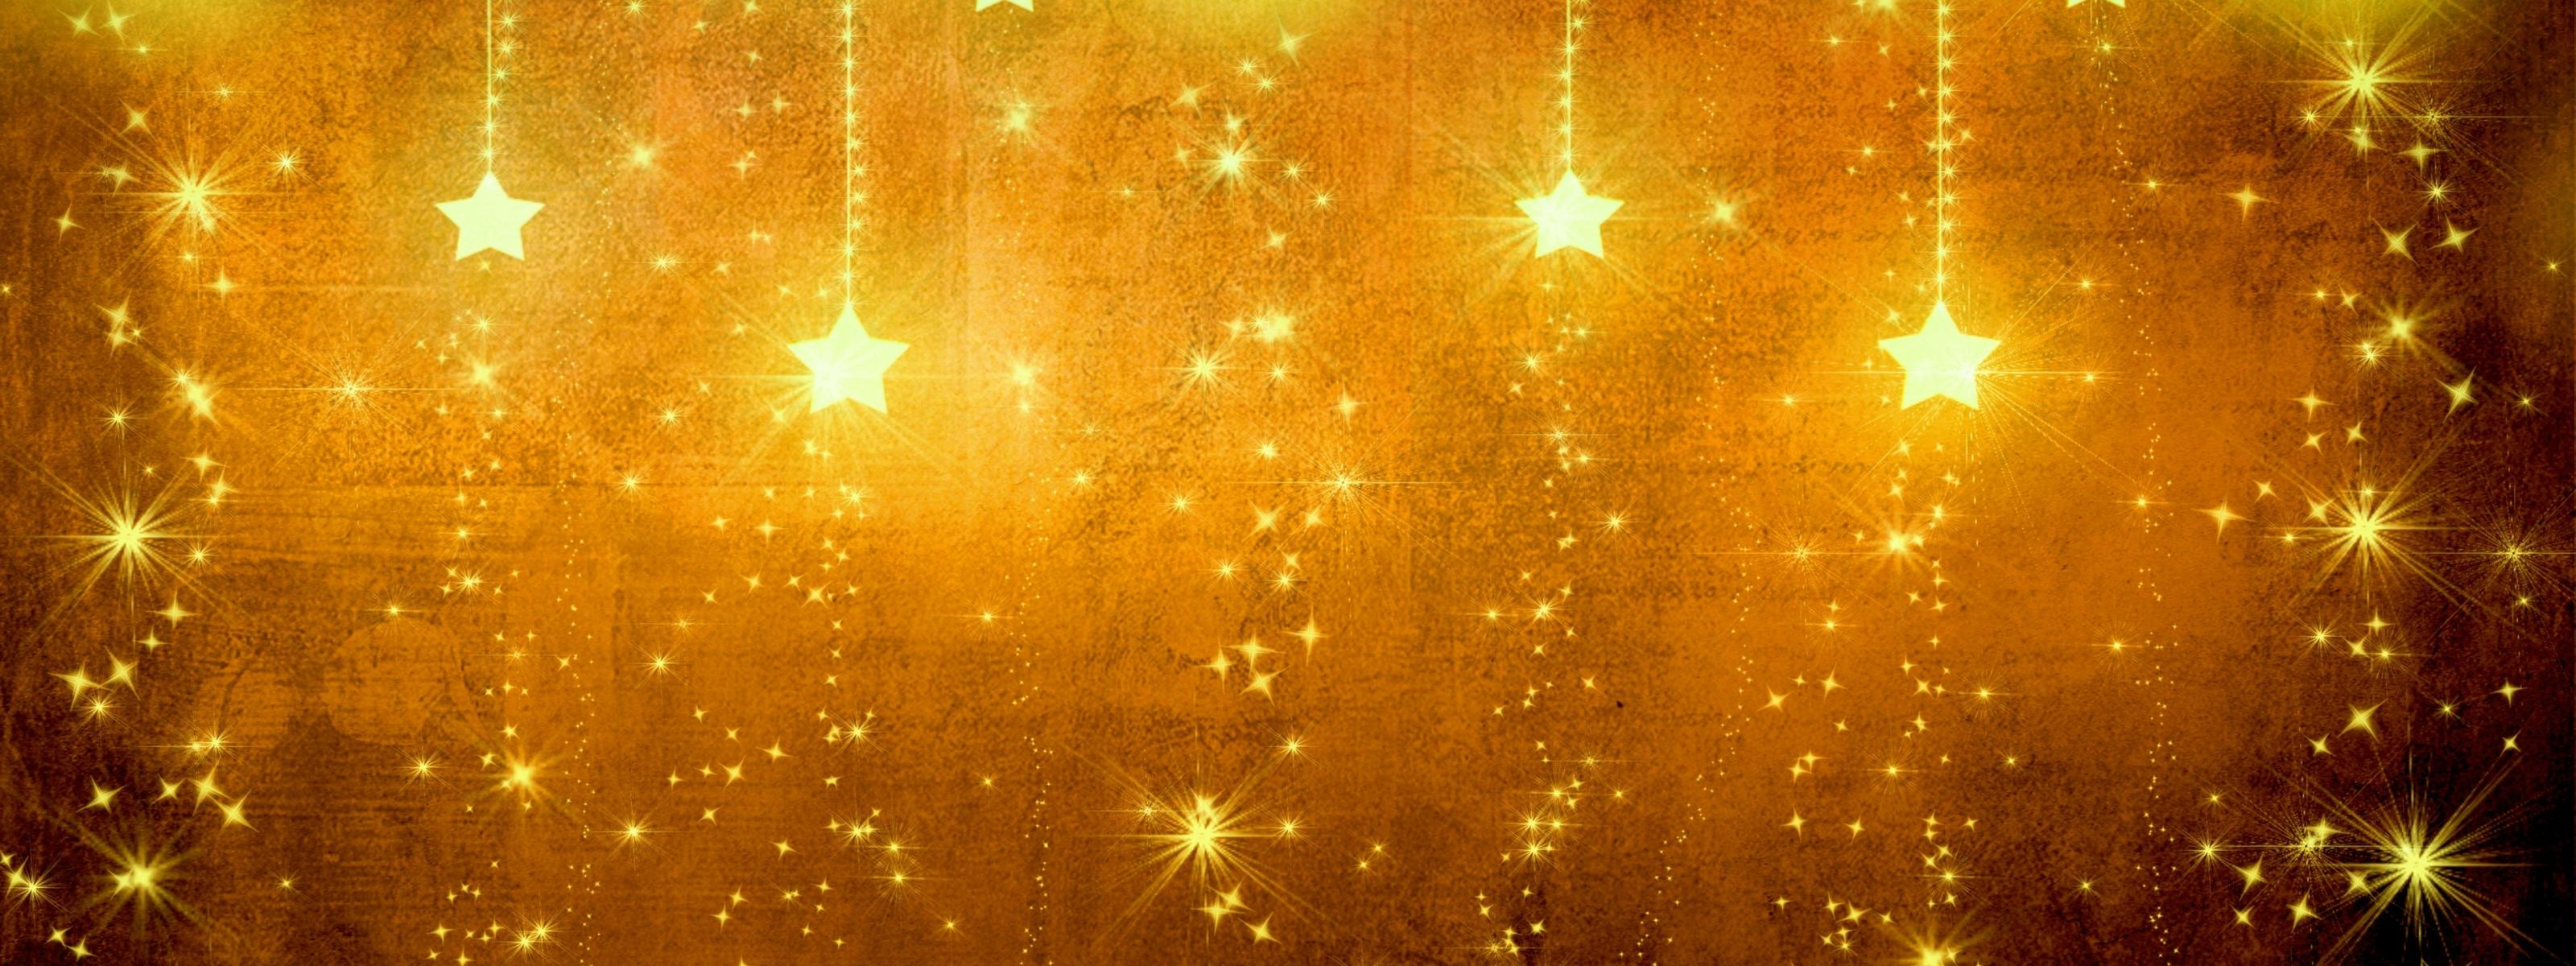 Thousands of golden stars